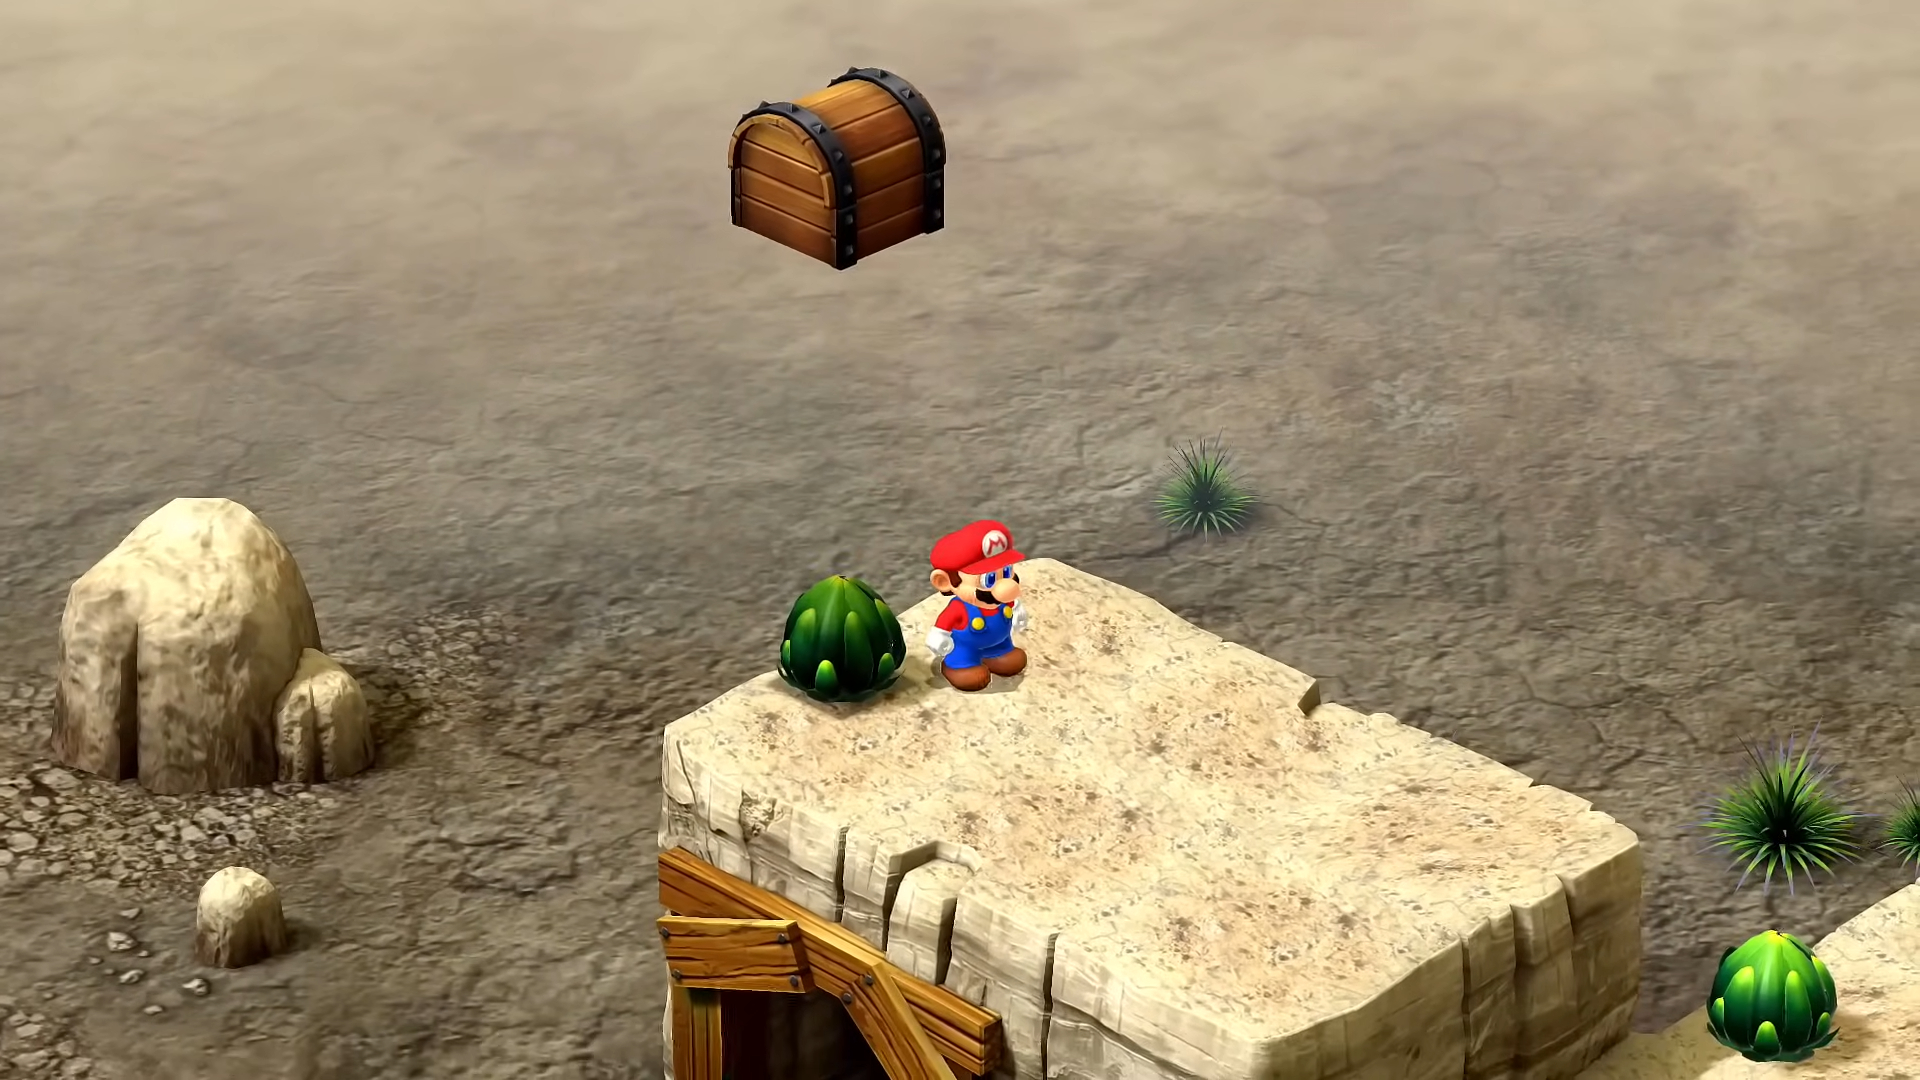 Mario near a cactus.